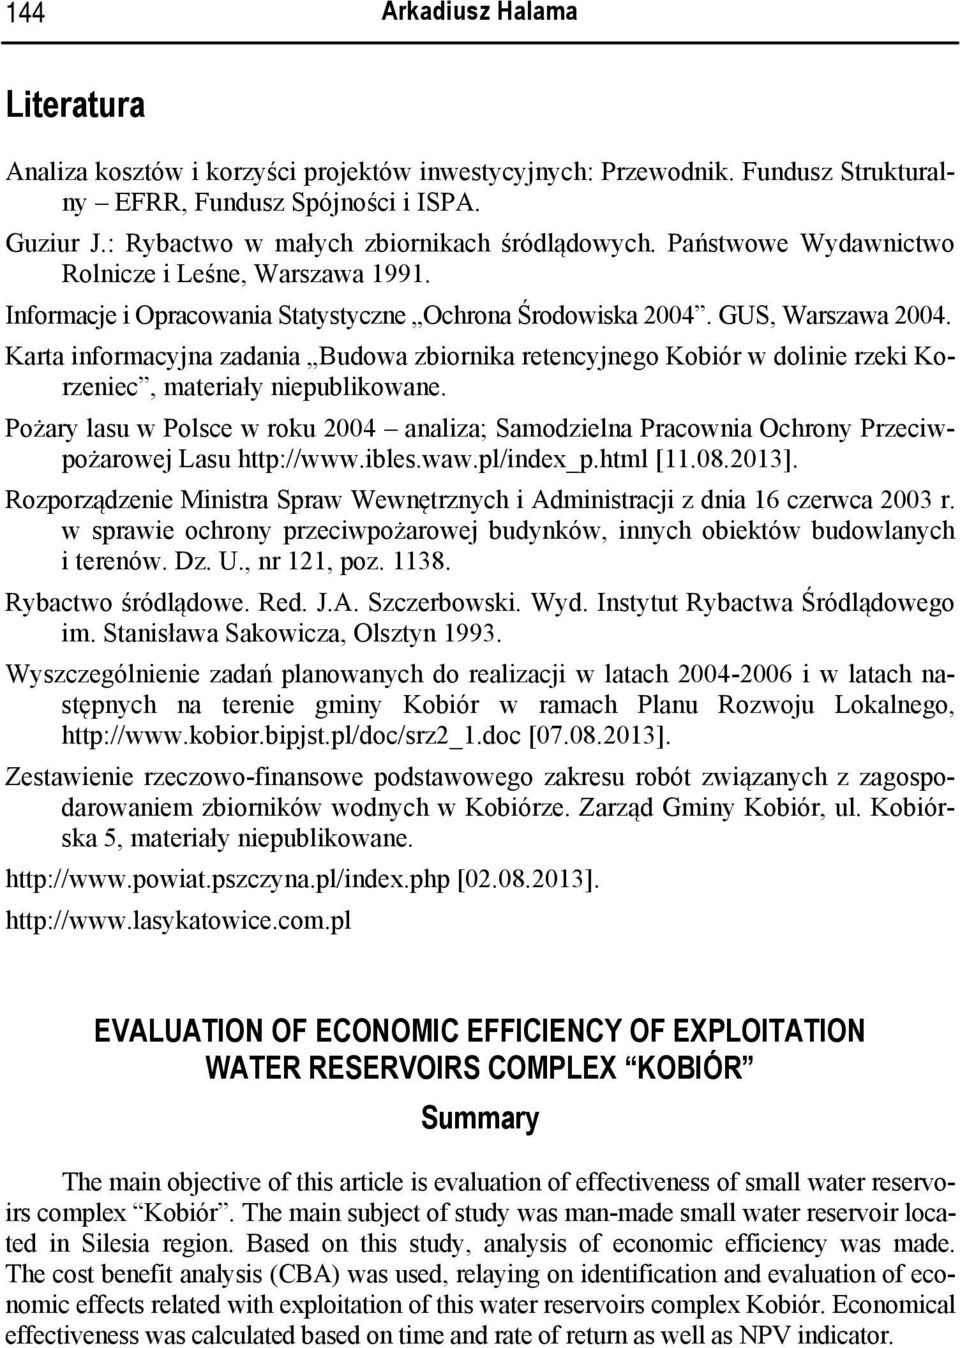 Karta informacyjna zadania Budowa zbiornika retencyjnego Kobiór w dolinie rzeki Korzeniec, materiały niepublikowane.